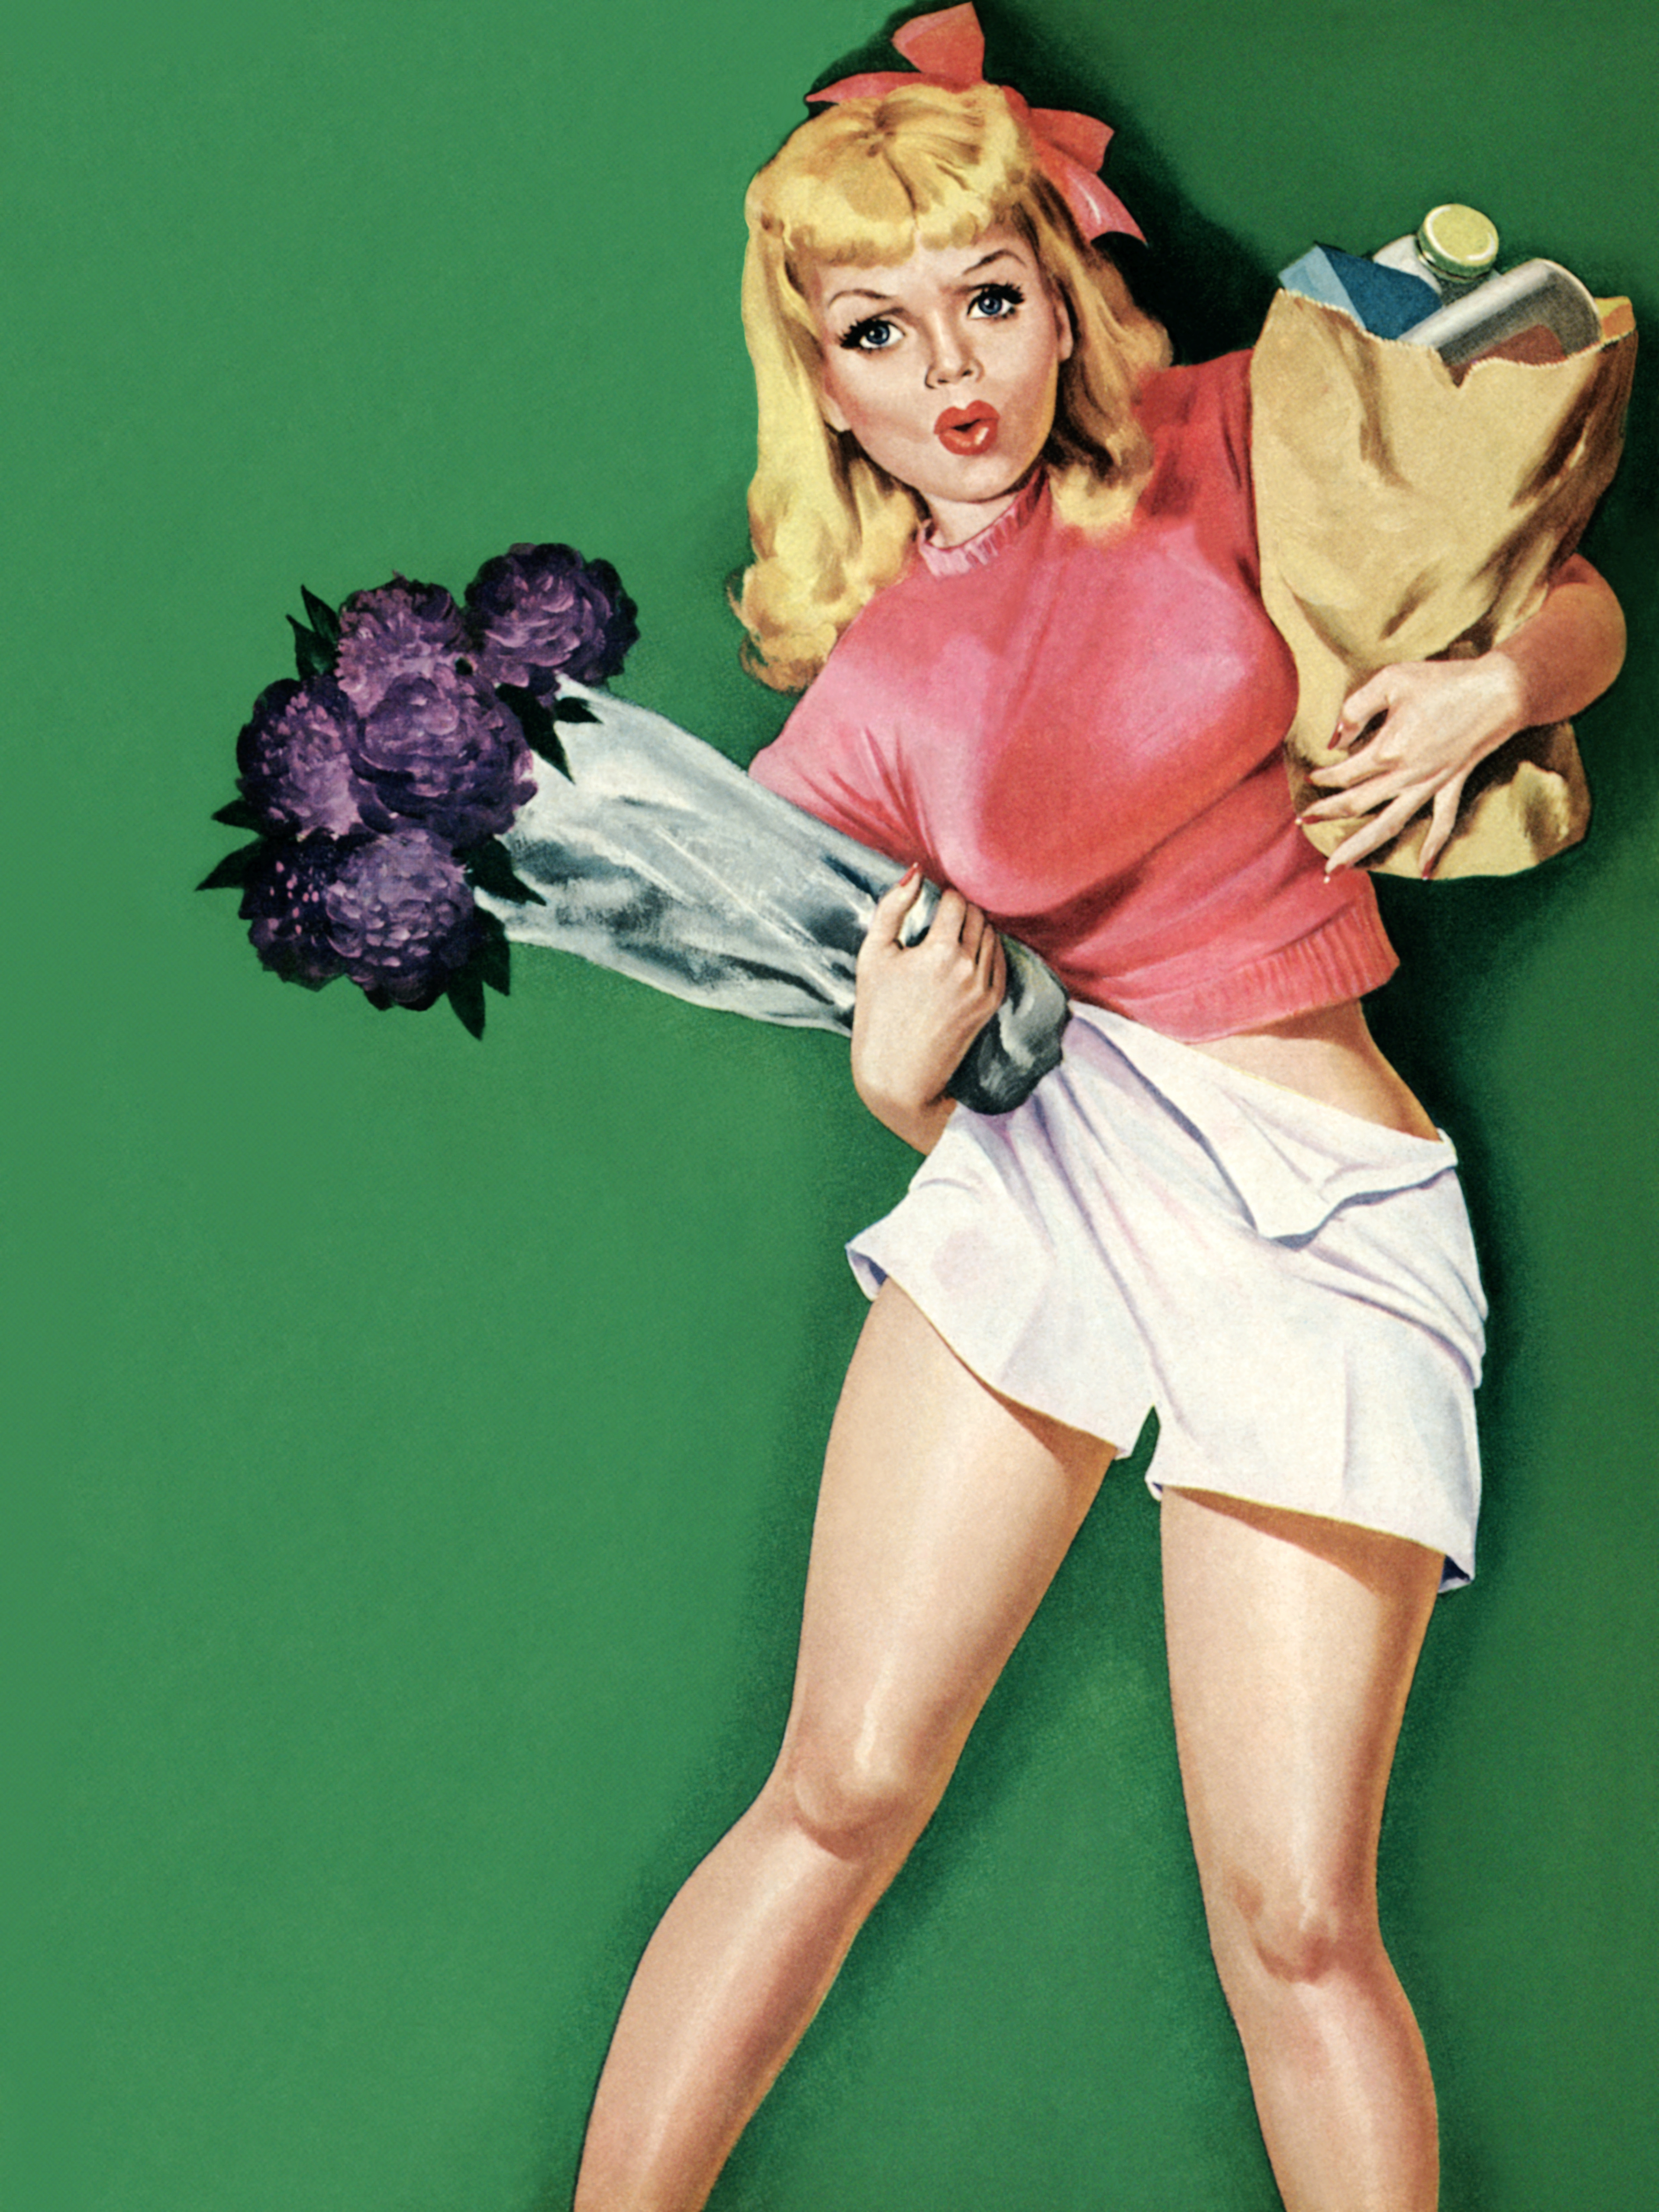 Сайт пин ап pinbetwin. Постеры в стиле 50-х годов. Девушка с плакатом. Пин ап девушки. Американские плакаты с девушками.